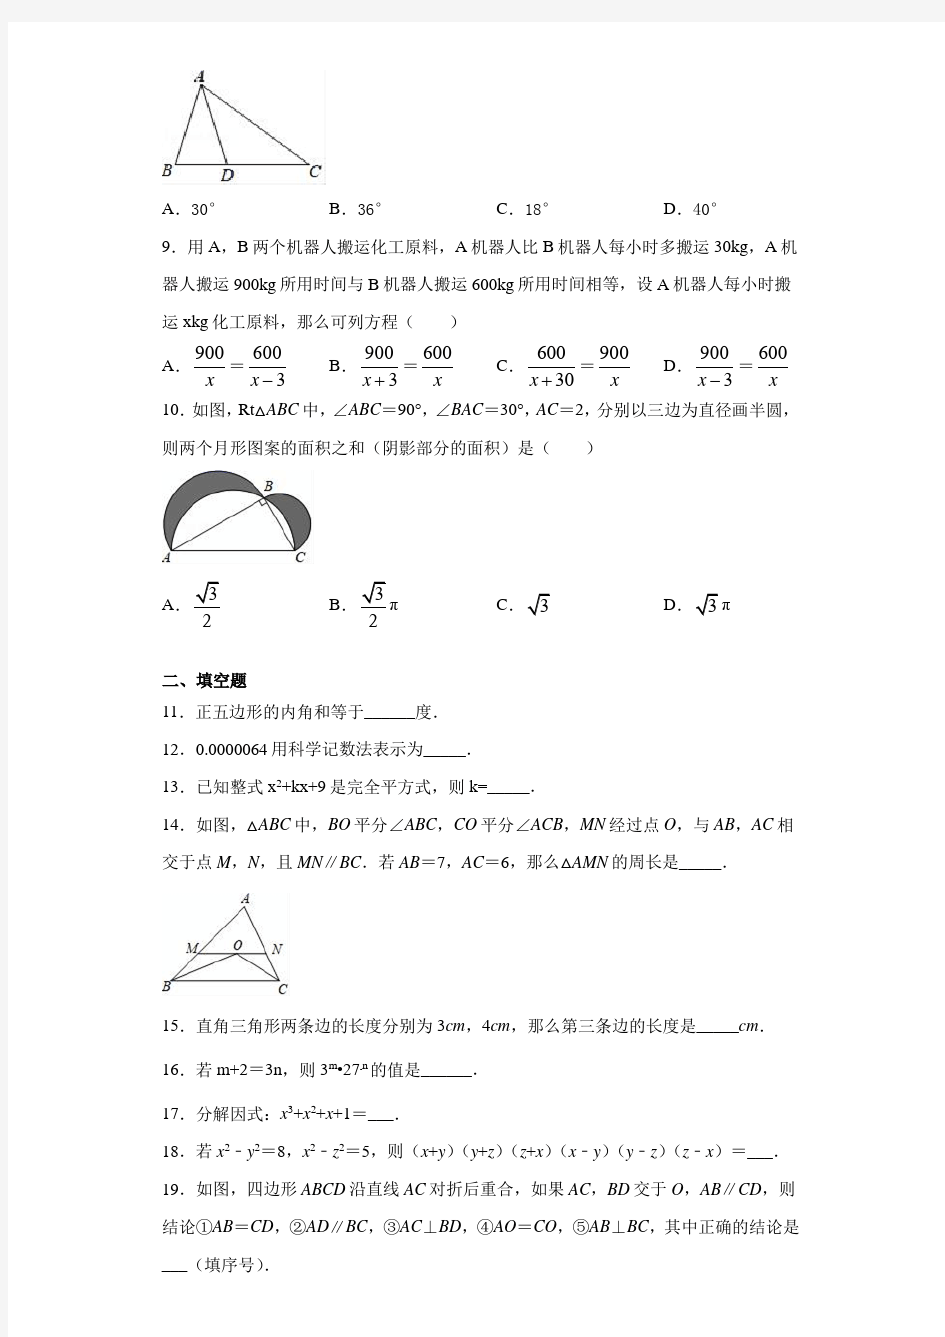 【区级联考】湖北省武汉市江汉区2020-2021学年八年级(上)期末数学试题